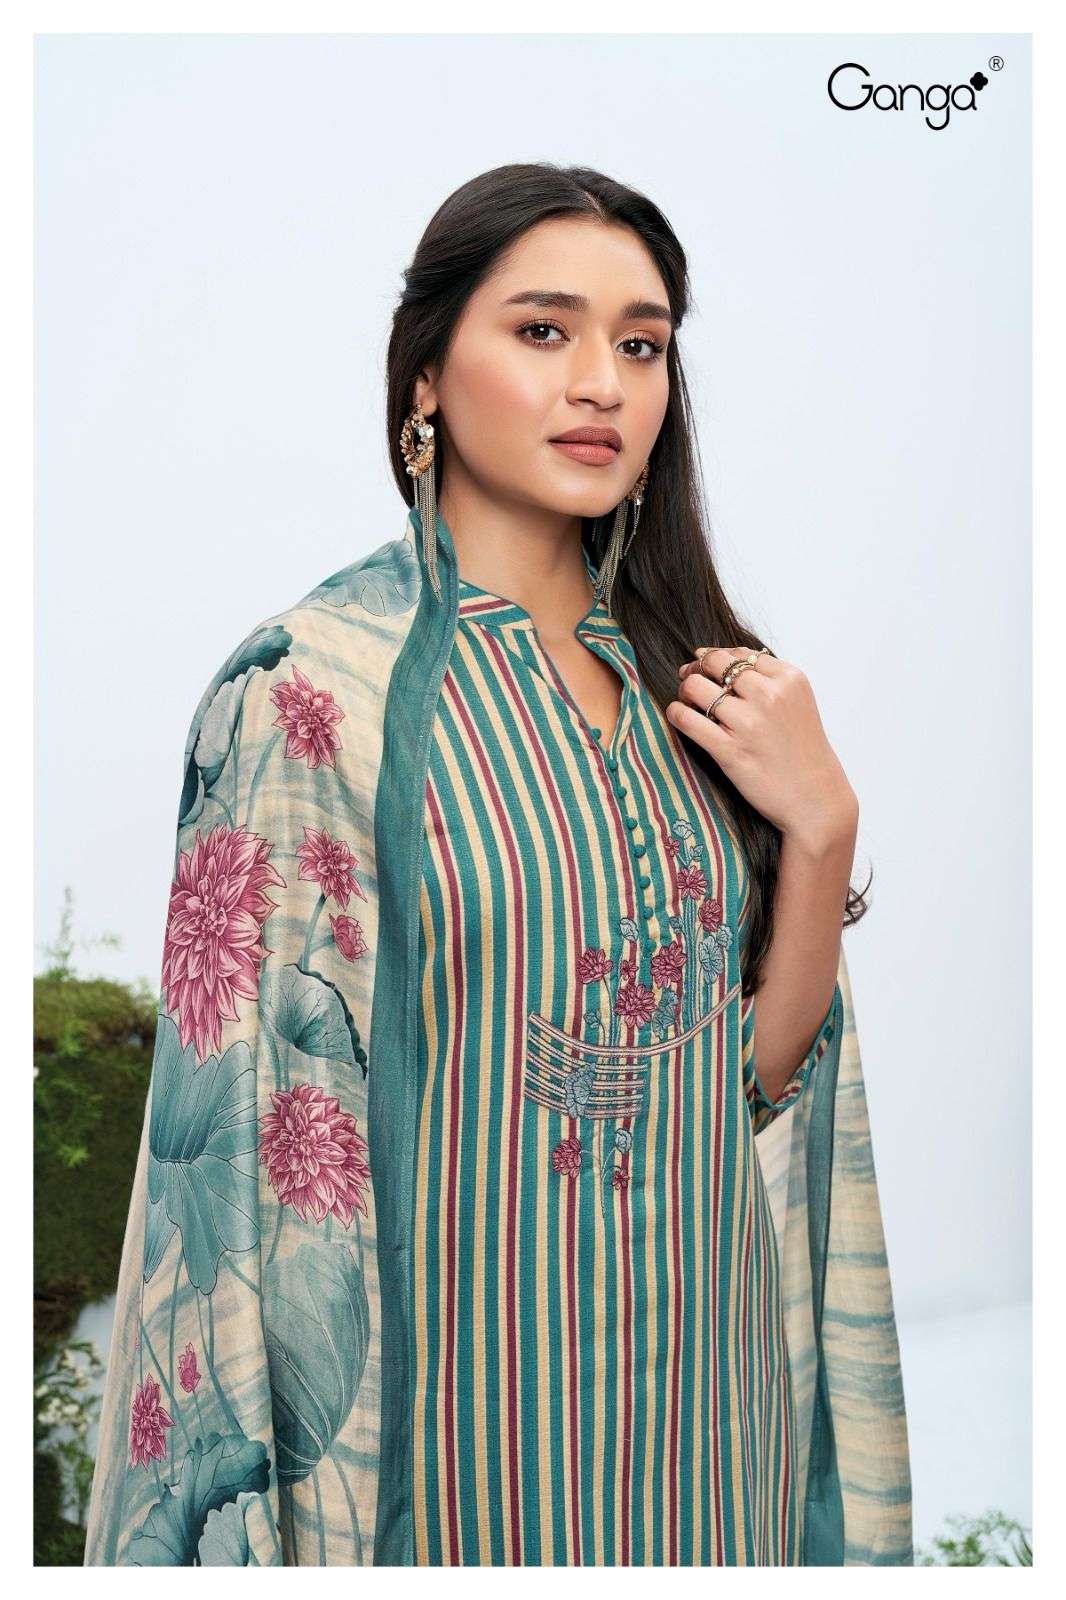 ganga jill 2107 colour series designer  pakistani salwar kameez wholesaler surat gujarat